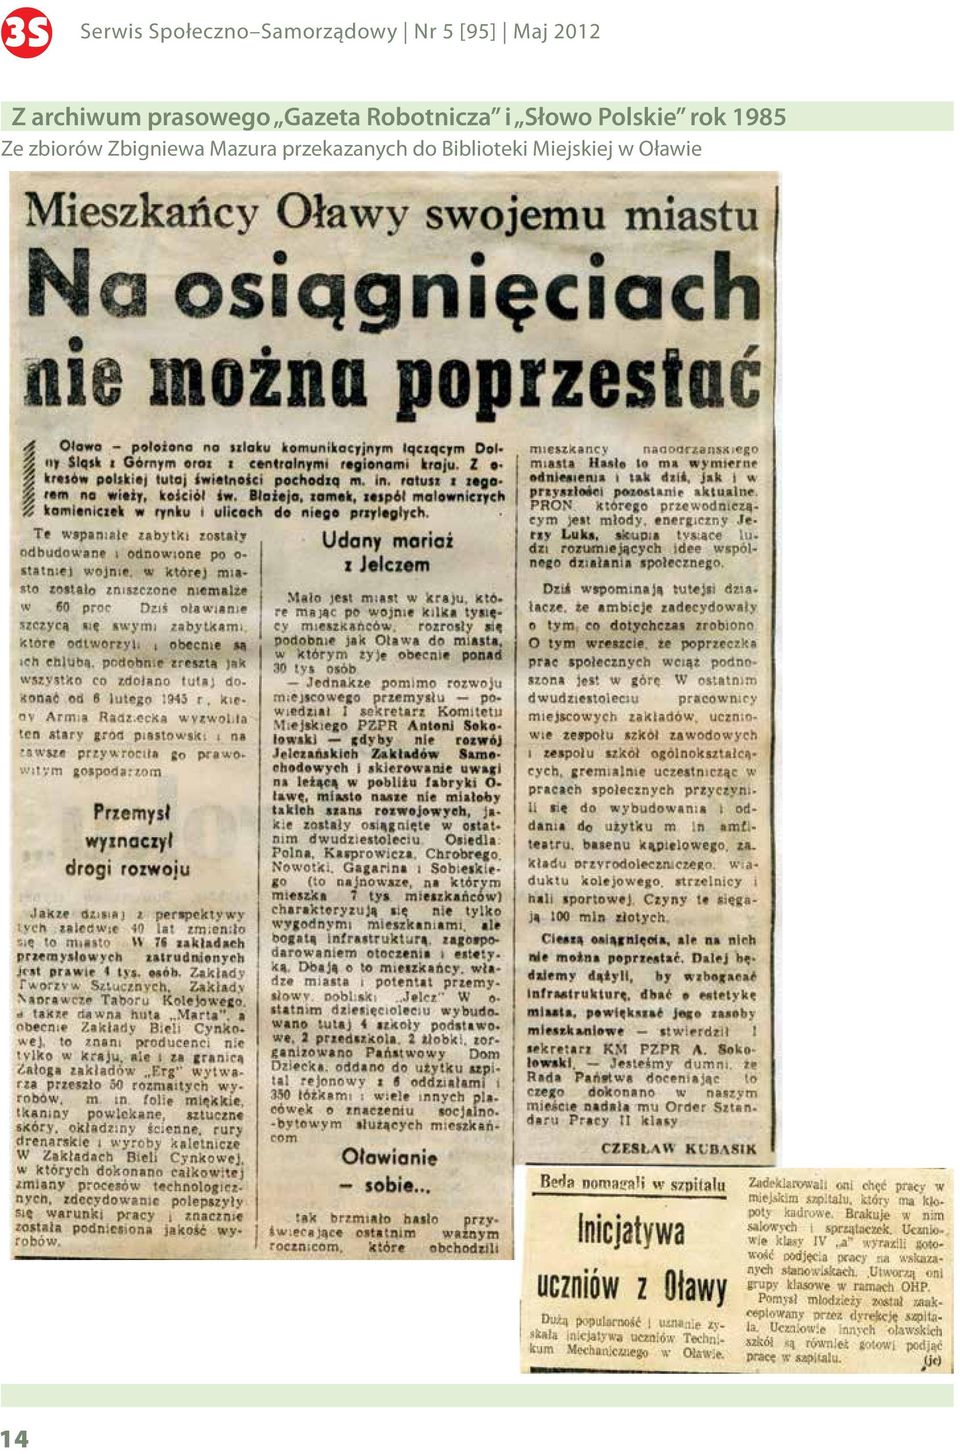 Słowo Polskie rok 1985 Ze zbiorów Zbigniewa